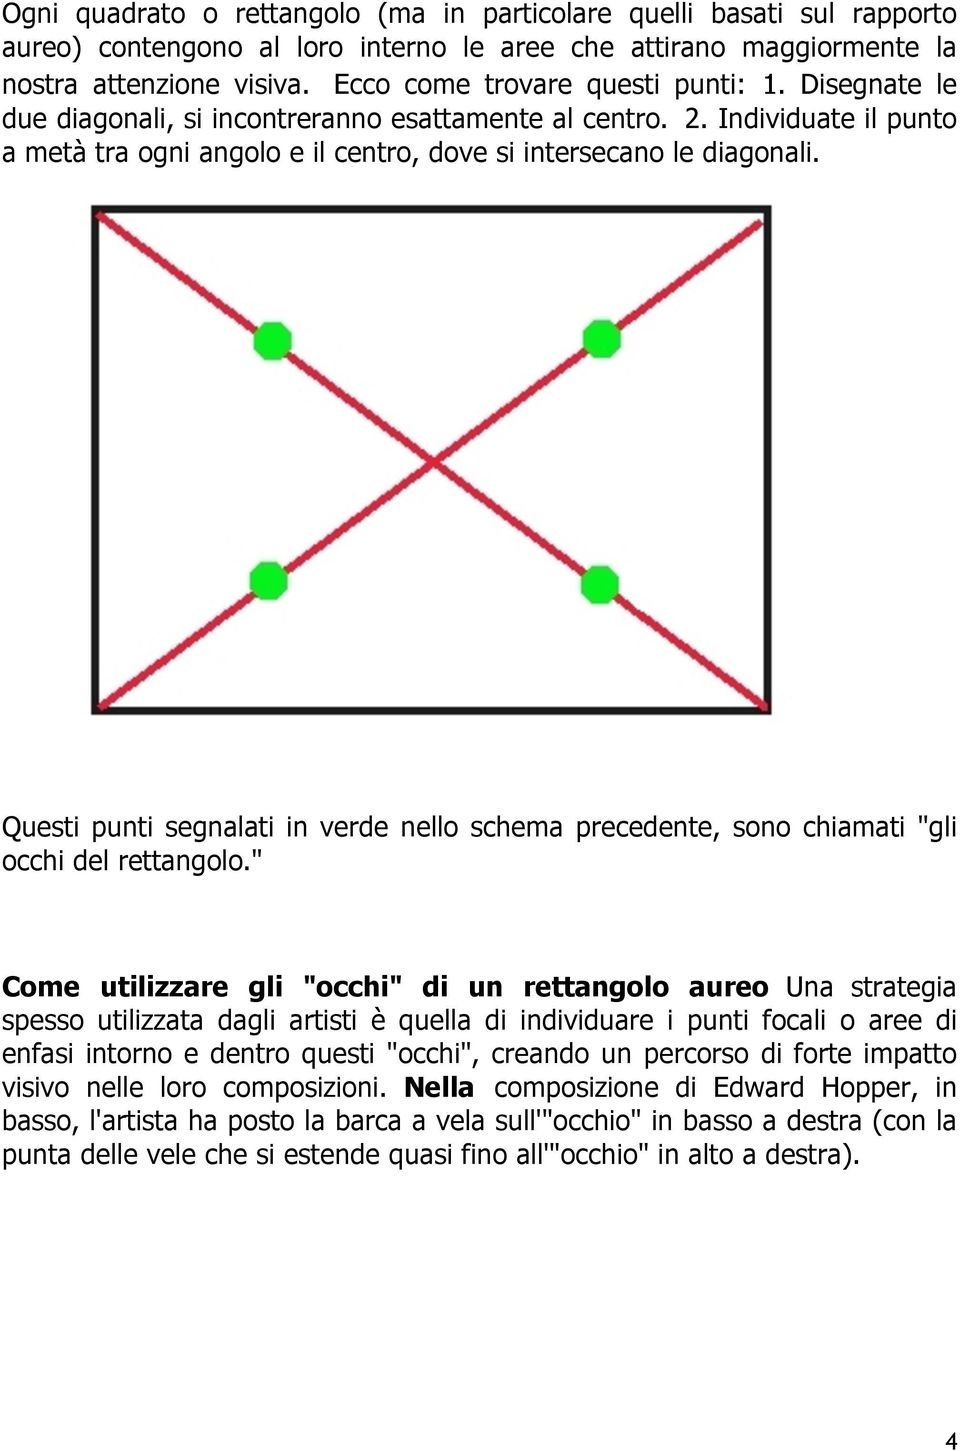 Questi punti segnalati in verde nello schema precedente, sono chiamati "gli occhi del rettangolo.